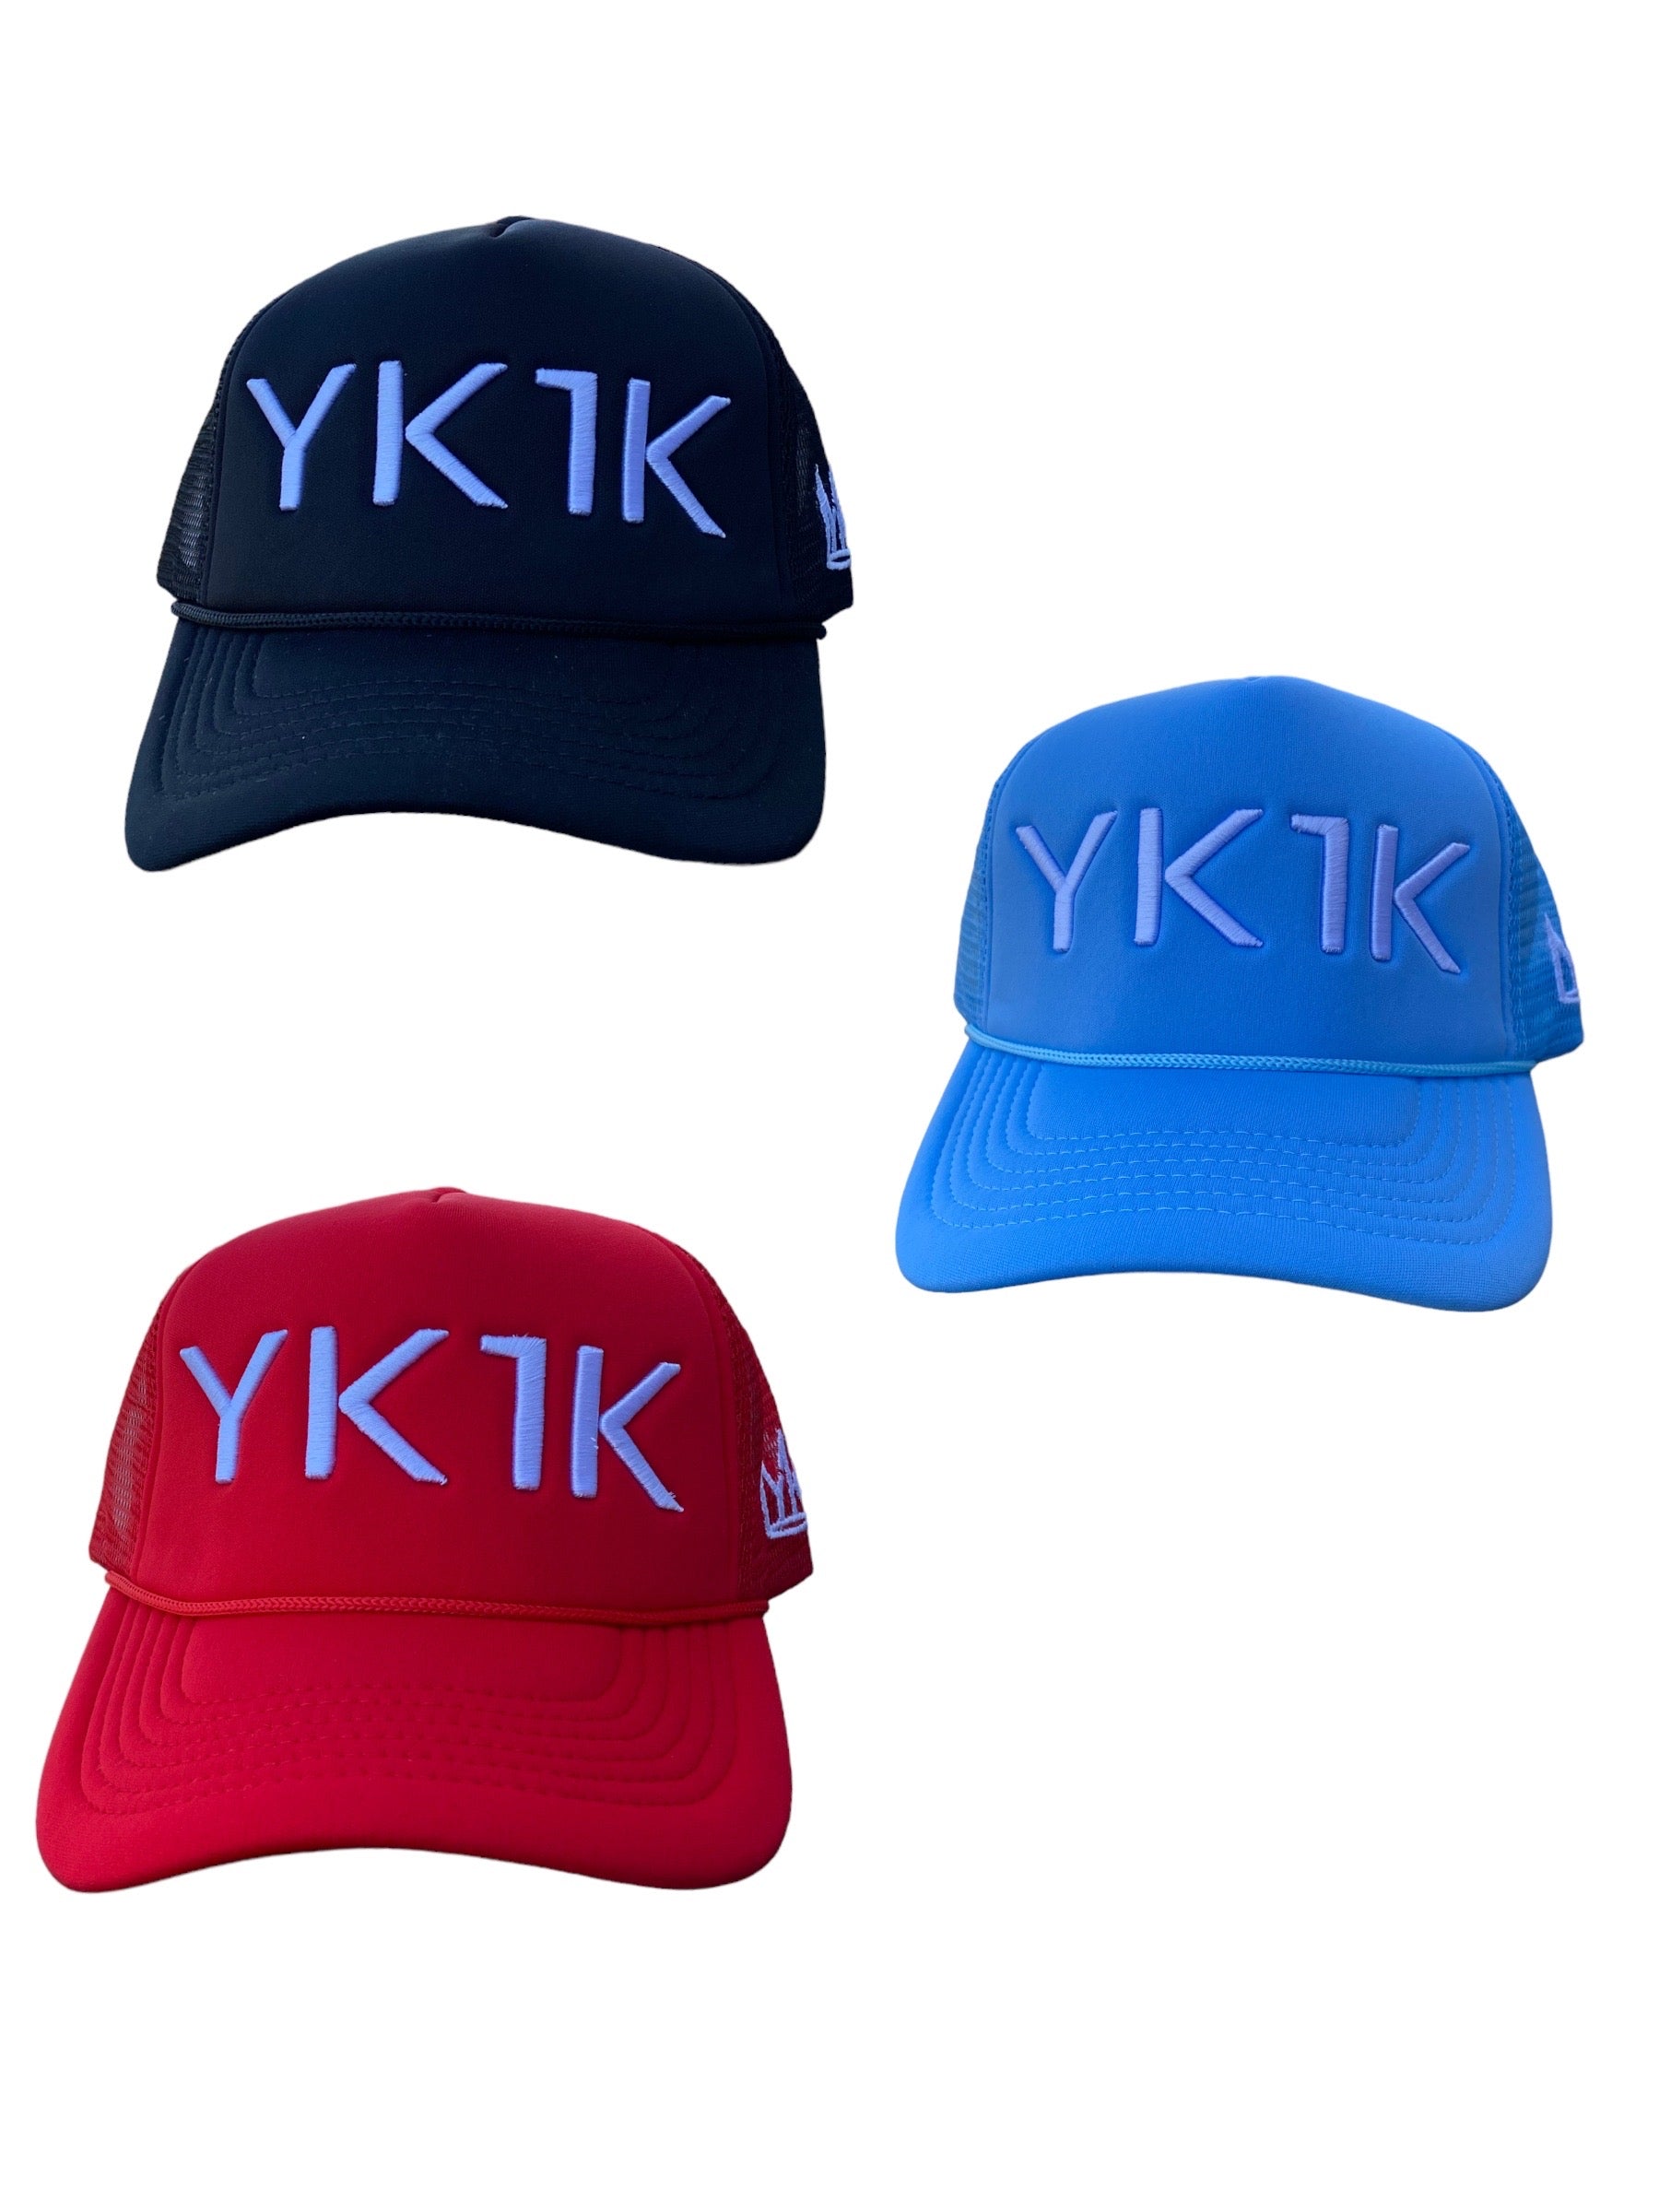 YK1K TRUCKER HATS